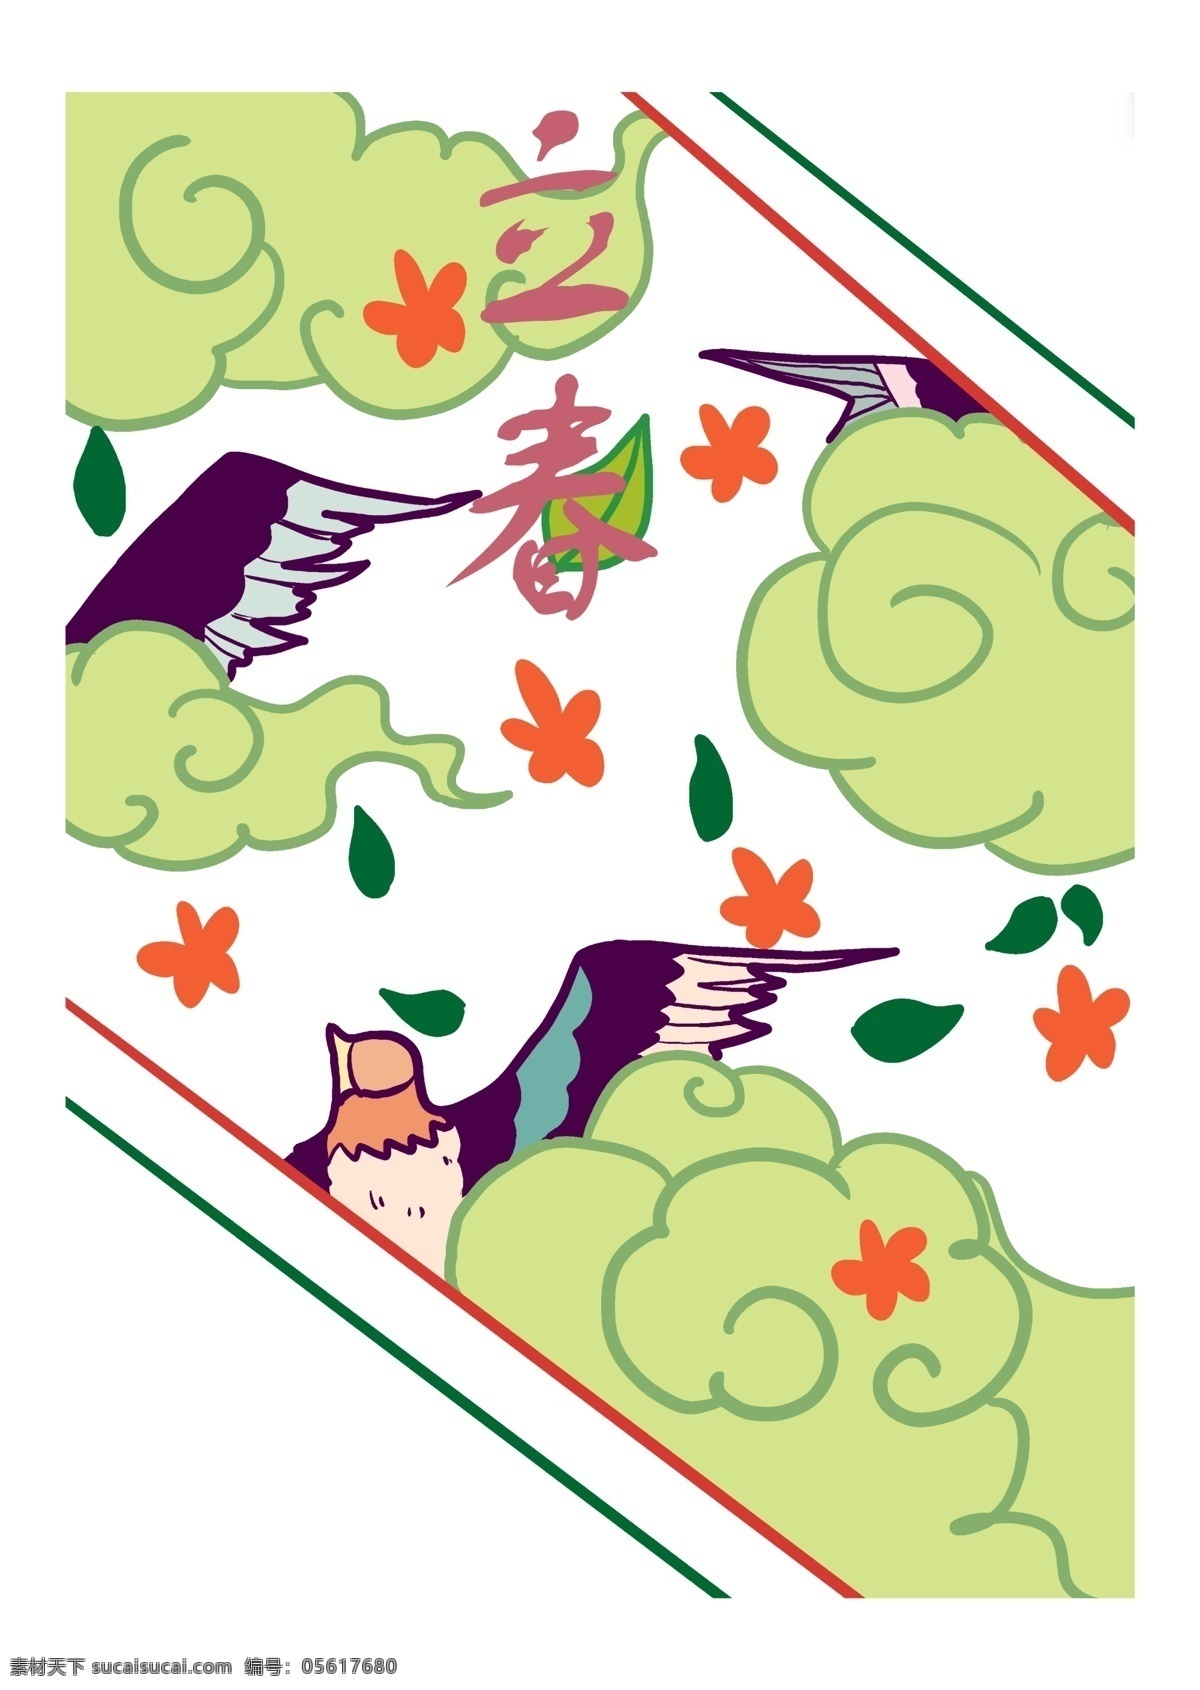 二十四节气 立春 燕子 归来 手绘 中国传统节日 万物复苏 原创手绘 生命力 卡通 春天 柳树 植物